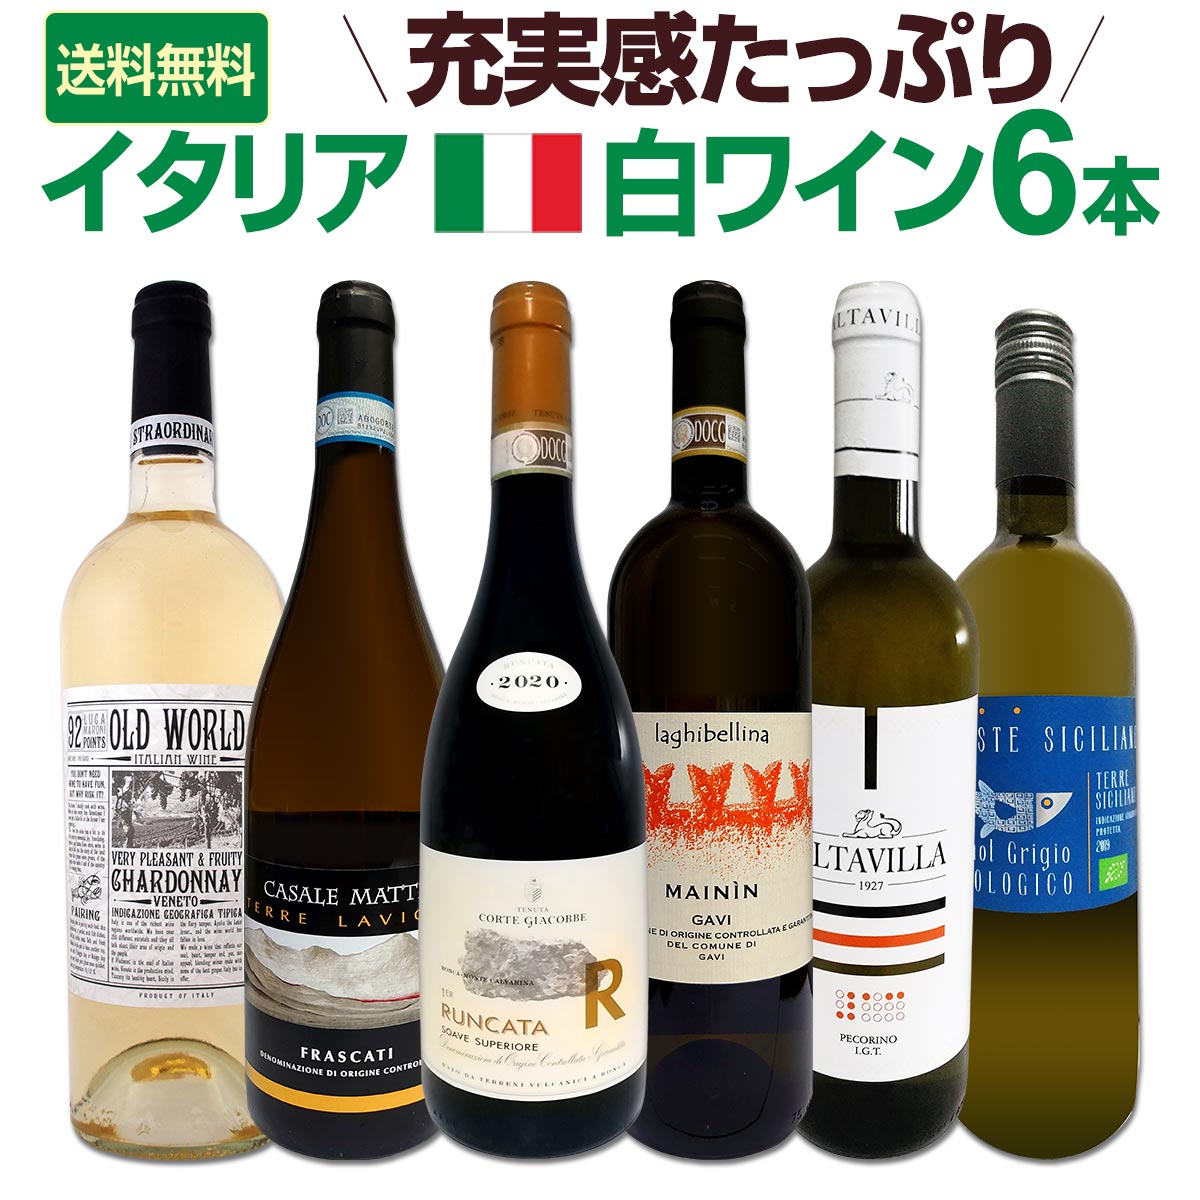 【送料無料】充実感たっぷりのイタリア白ワイン6本セット!!